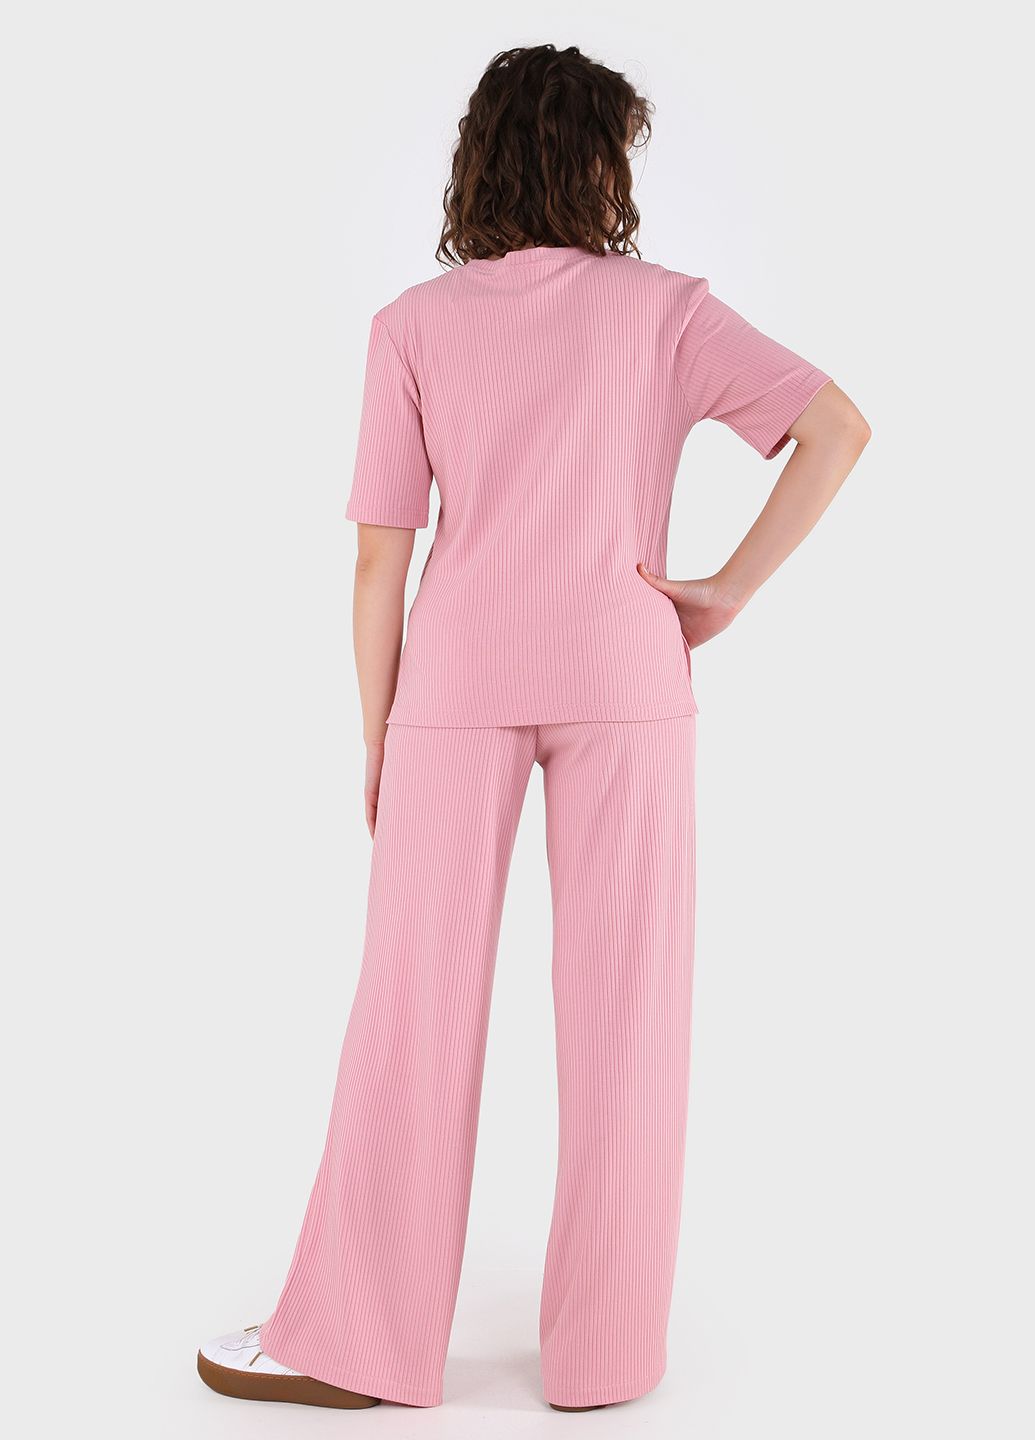 Купить Костюм женский в рубчик розового цвета Merlini Аликанте 100000102, размер 42-44 в интернет-магазине